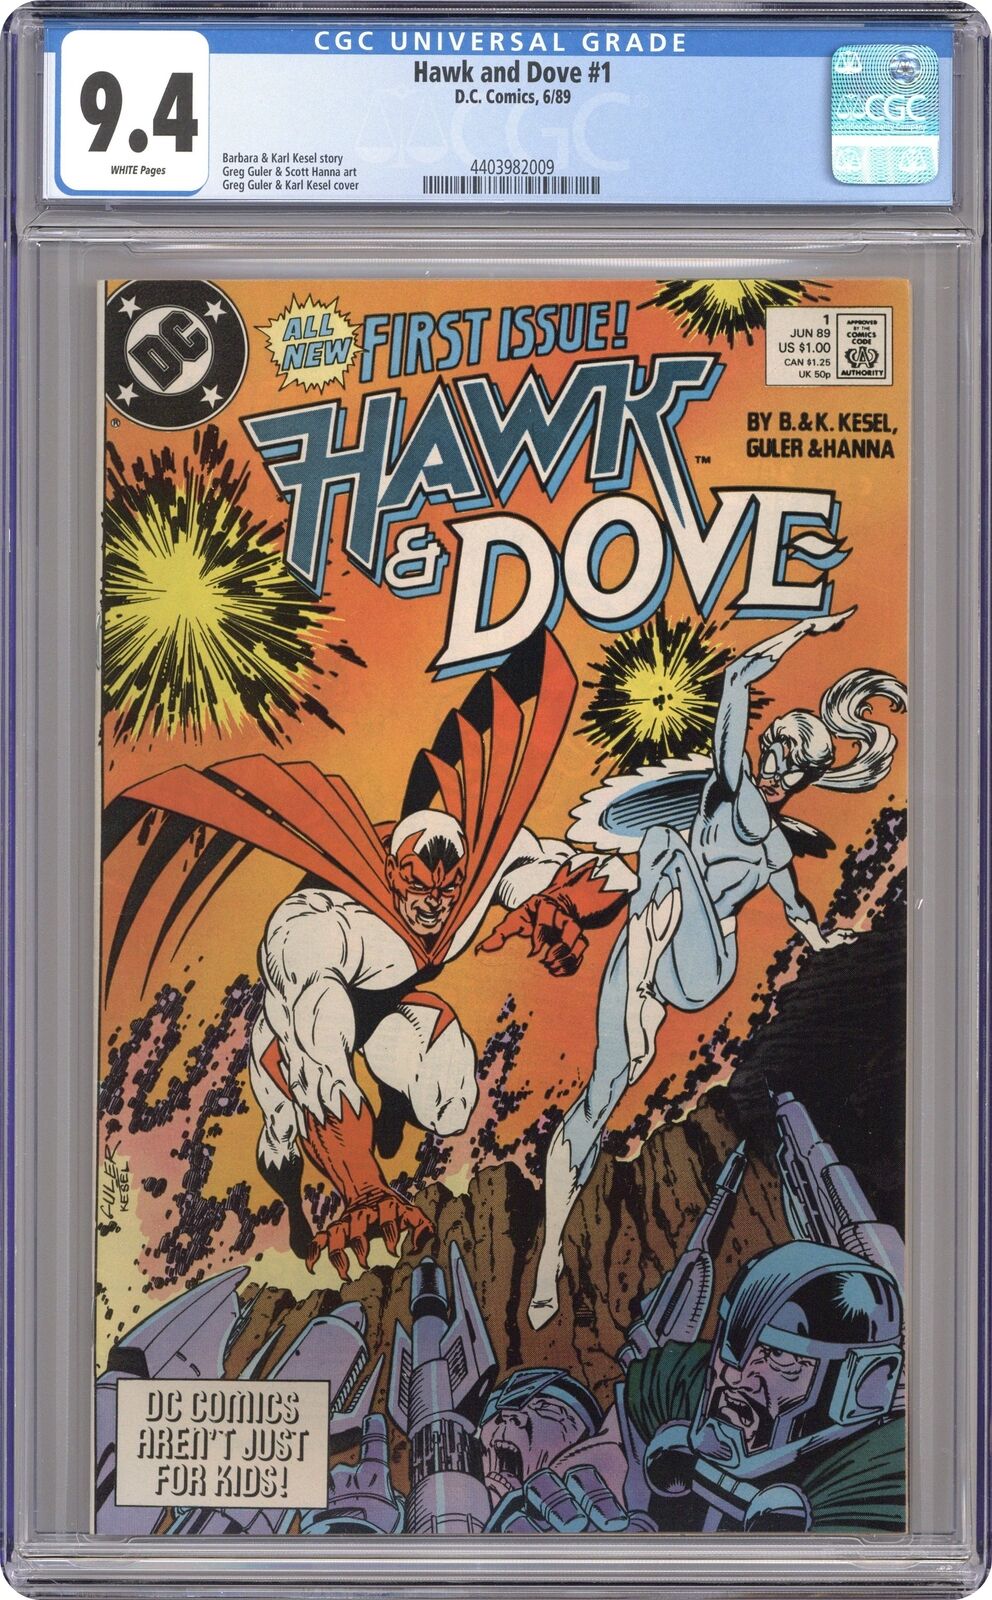 Hawk and Dove #1 CGC 9.4 1989 4403982009